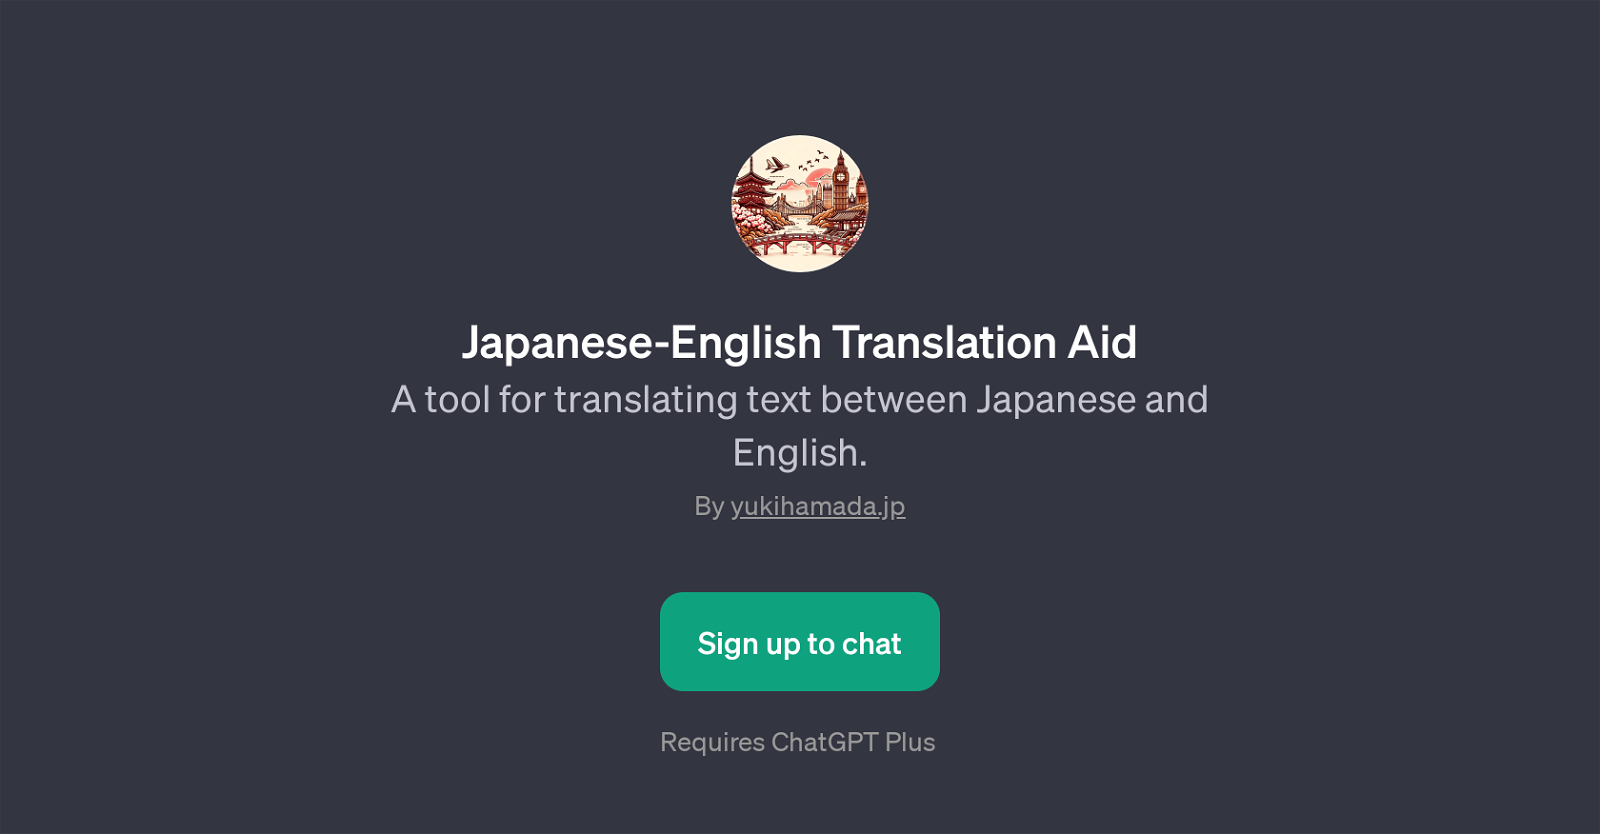 Japanese-English Translation Aid website